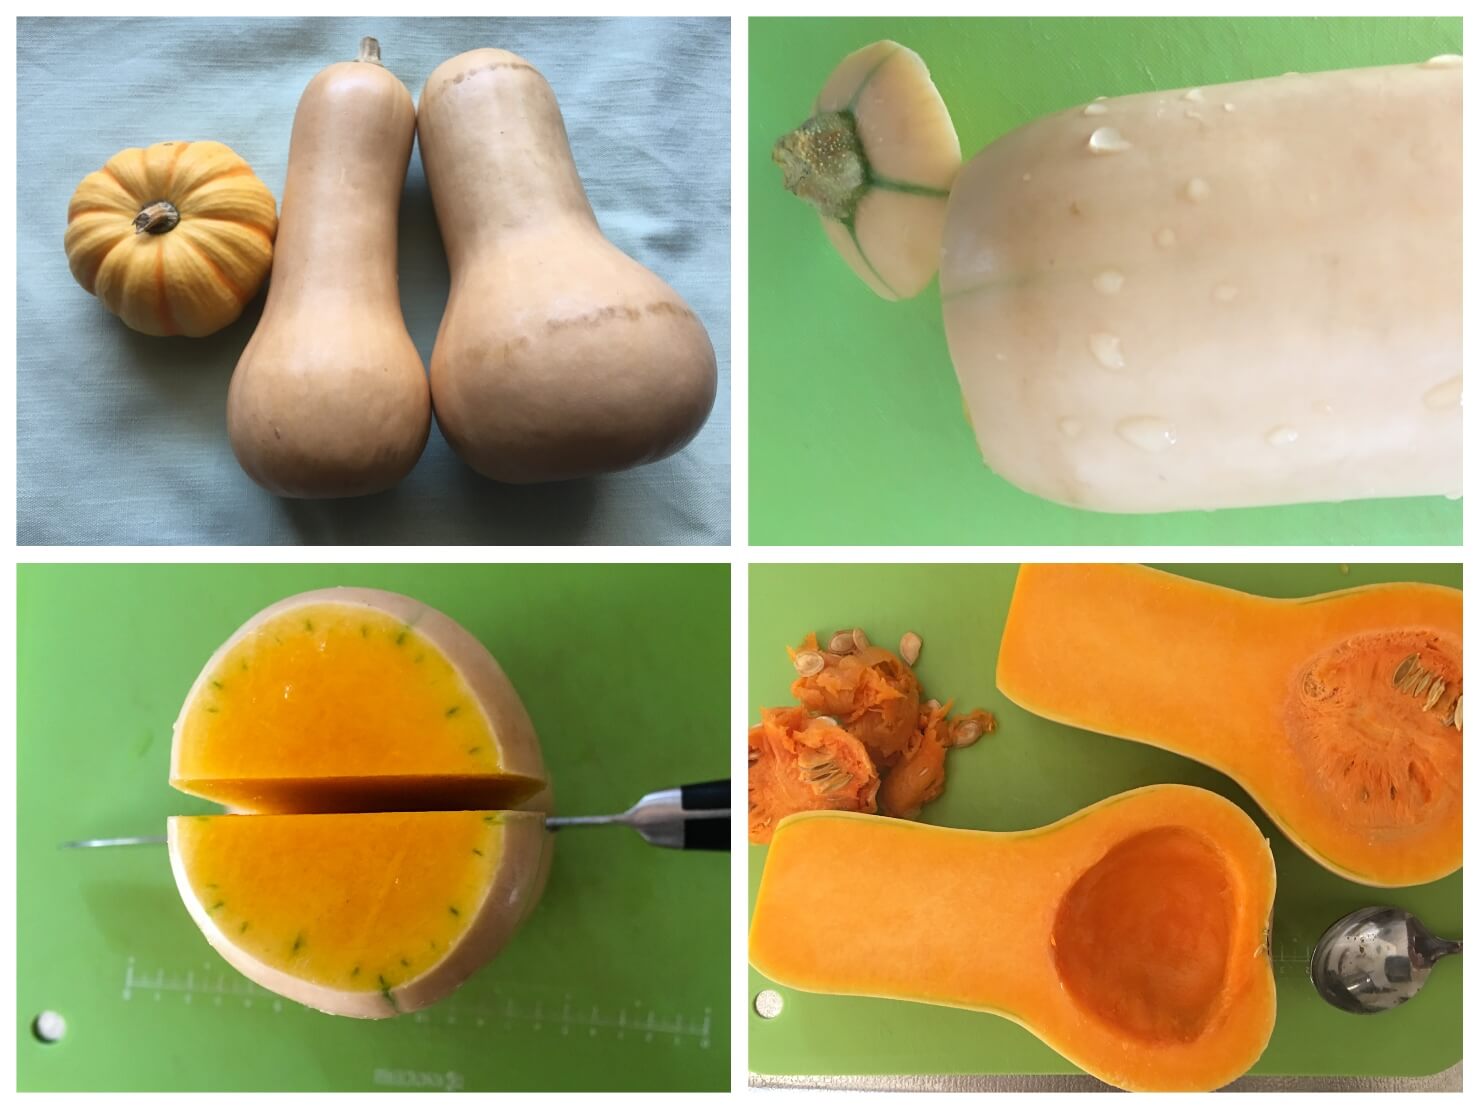 バターナッツかぼちゃの切り方説明の写真のコラージュ